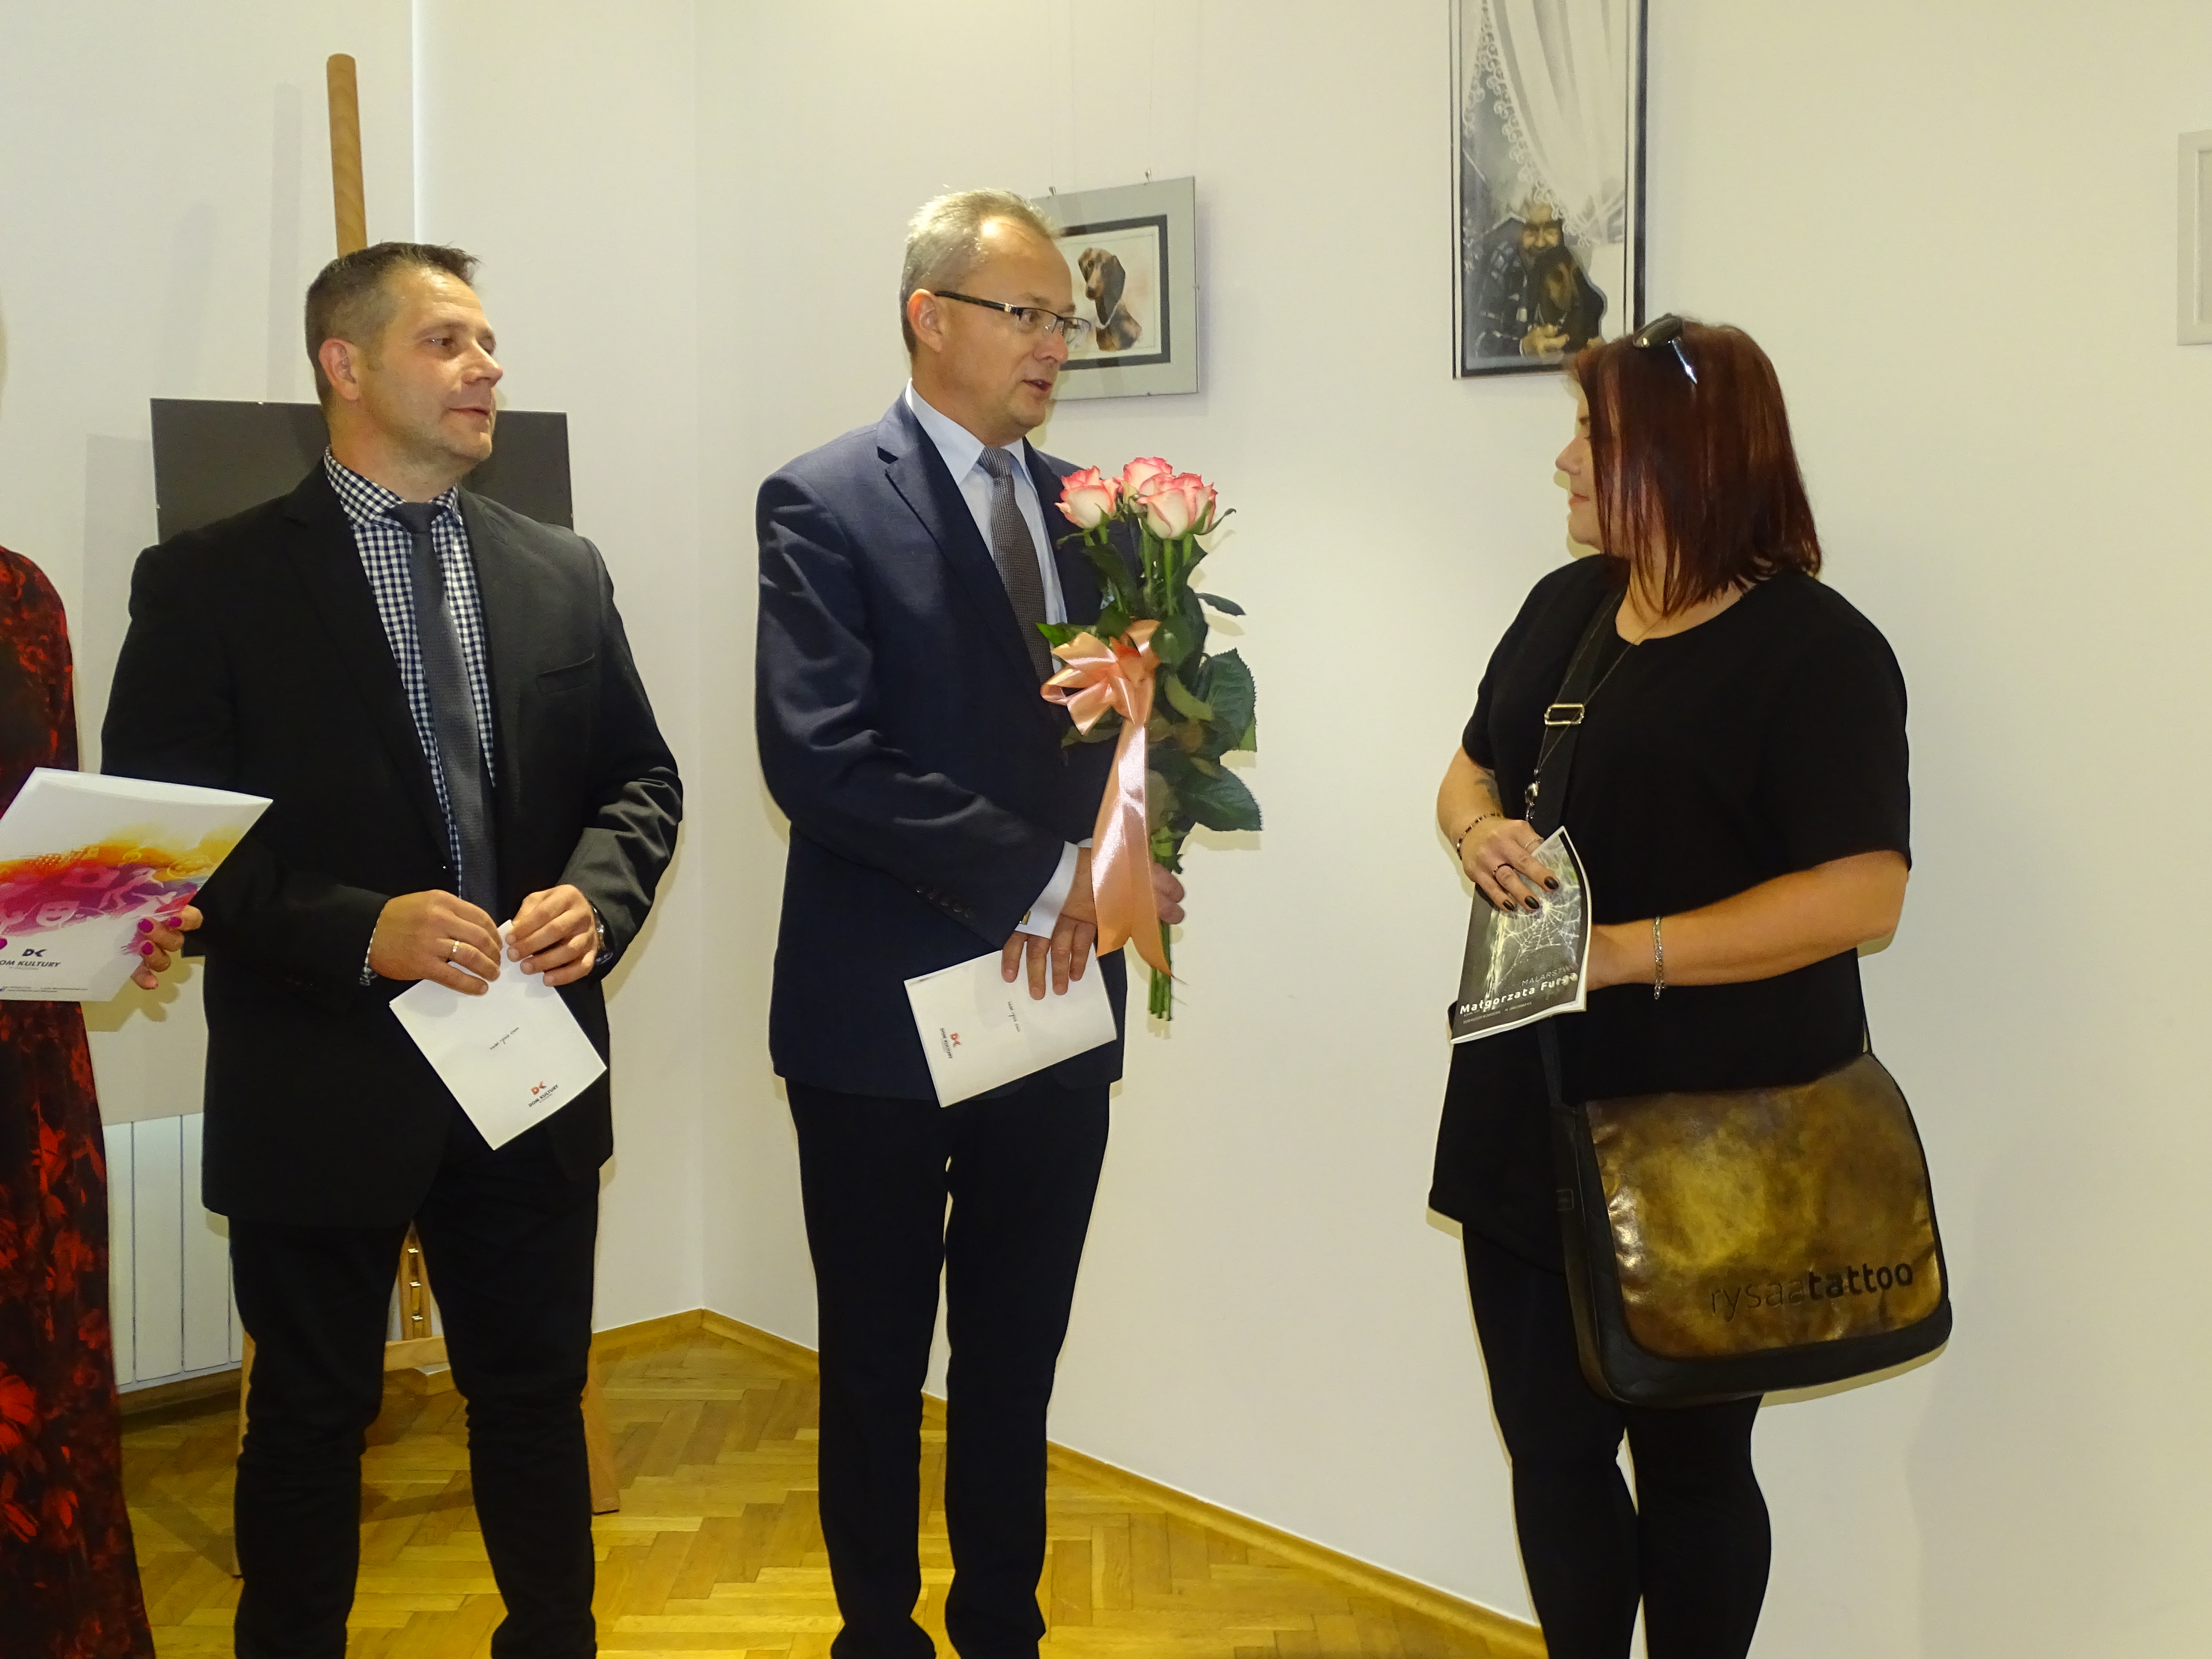 Burmistrz Zwolenia Arkadiusz Sulima wspólnie z z-cą burmistrza Grzegorzem Molendowskim nie tylko podziękowali artystce za prezentację prac w miejscowym Domu Kultury ale także pogratulowali wielkiego talentu i tak różnorodnych pasji. 